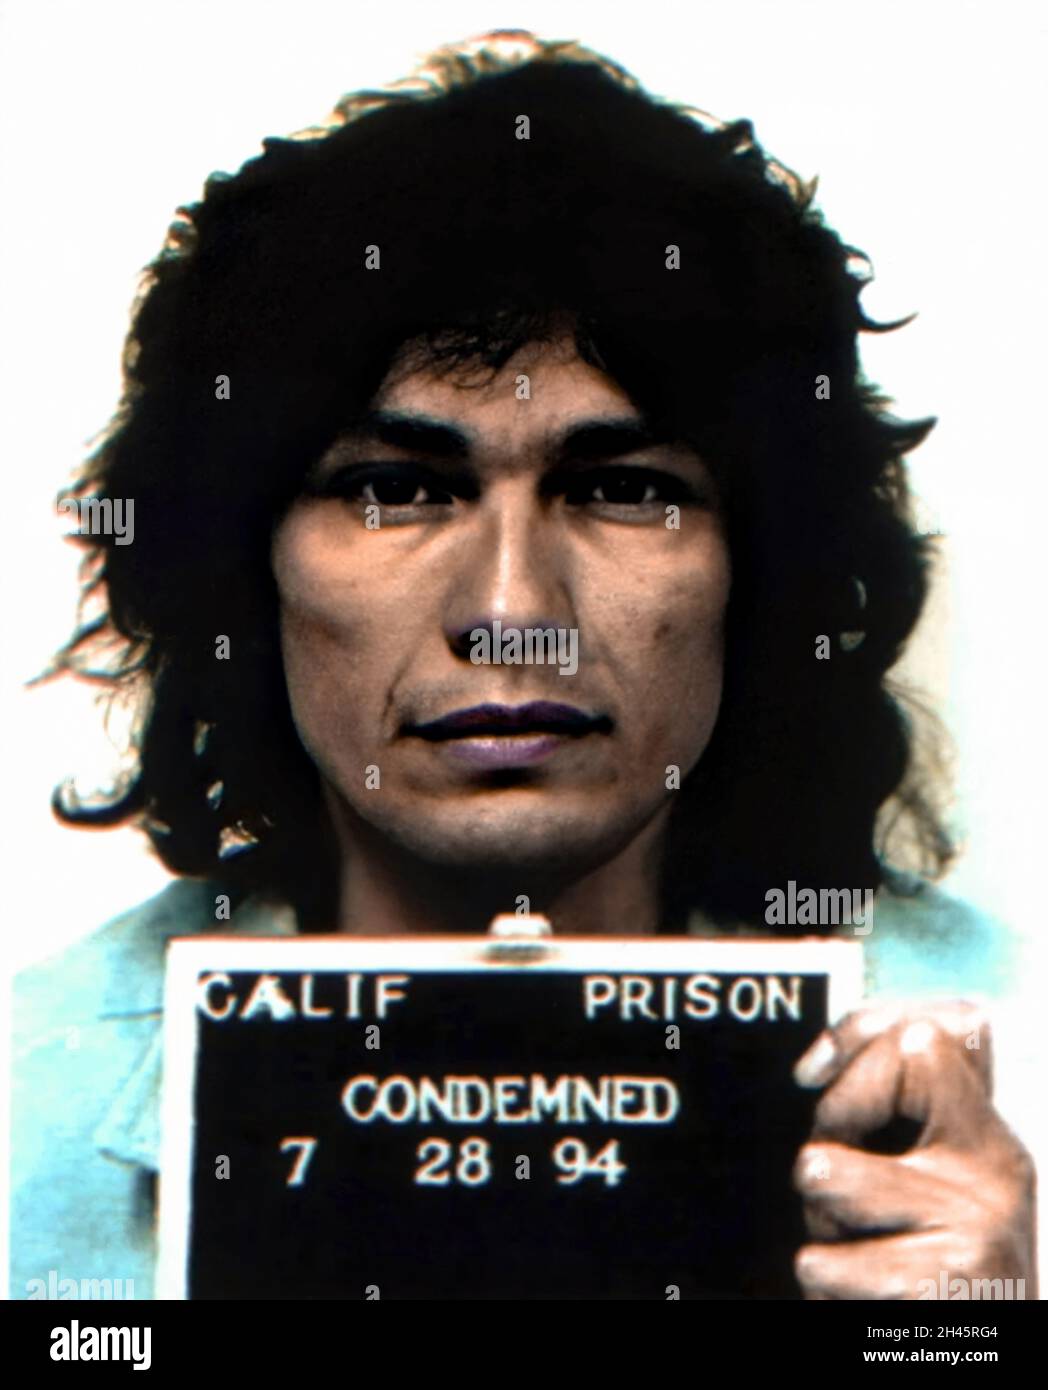 1994 , 28 luglio , USA : il serial killer satanista RICHARD RAMIREZ ( 1960 - 2013 ) di 34 anni, nato Ricardo Leyva Munoz Ramírez . Mugshot dal carcere di Stato della California . Ramirez ' The Night Stalker ' era anche stupratore seriale , rapinatore , molestatore bambino e burglar , era un killer americano che uccise almeno 13 persone , dal 17 marzo al 31 agosto 1985 . Fotografo sconosciuto .- MUG SHOT - MUG-SHOT - SERIAL KILLER - ritratto - ritratto - serial-killer - assassino seriale - CRONACA nera - criminale - criminale - SERIAL KILLER - foto segnaletica della Politica - SATANISMO - SATANISMO - SATANISTA Foto Stock